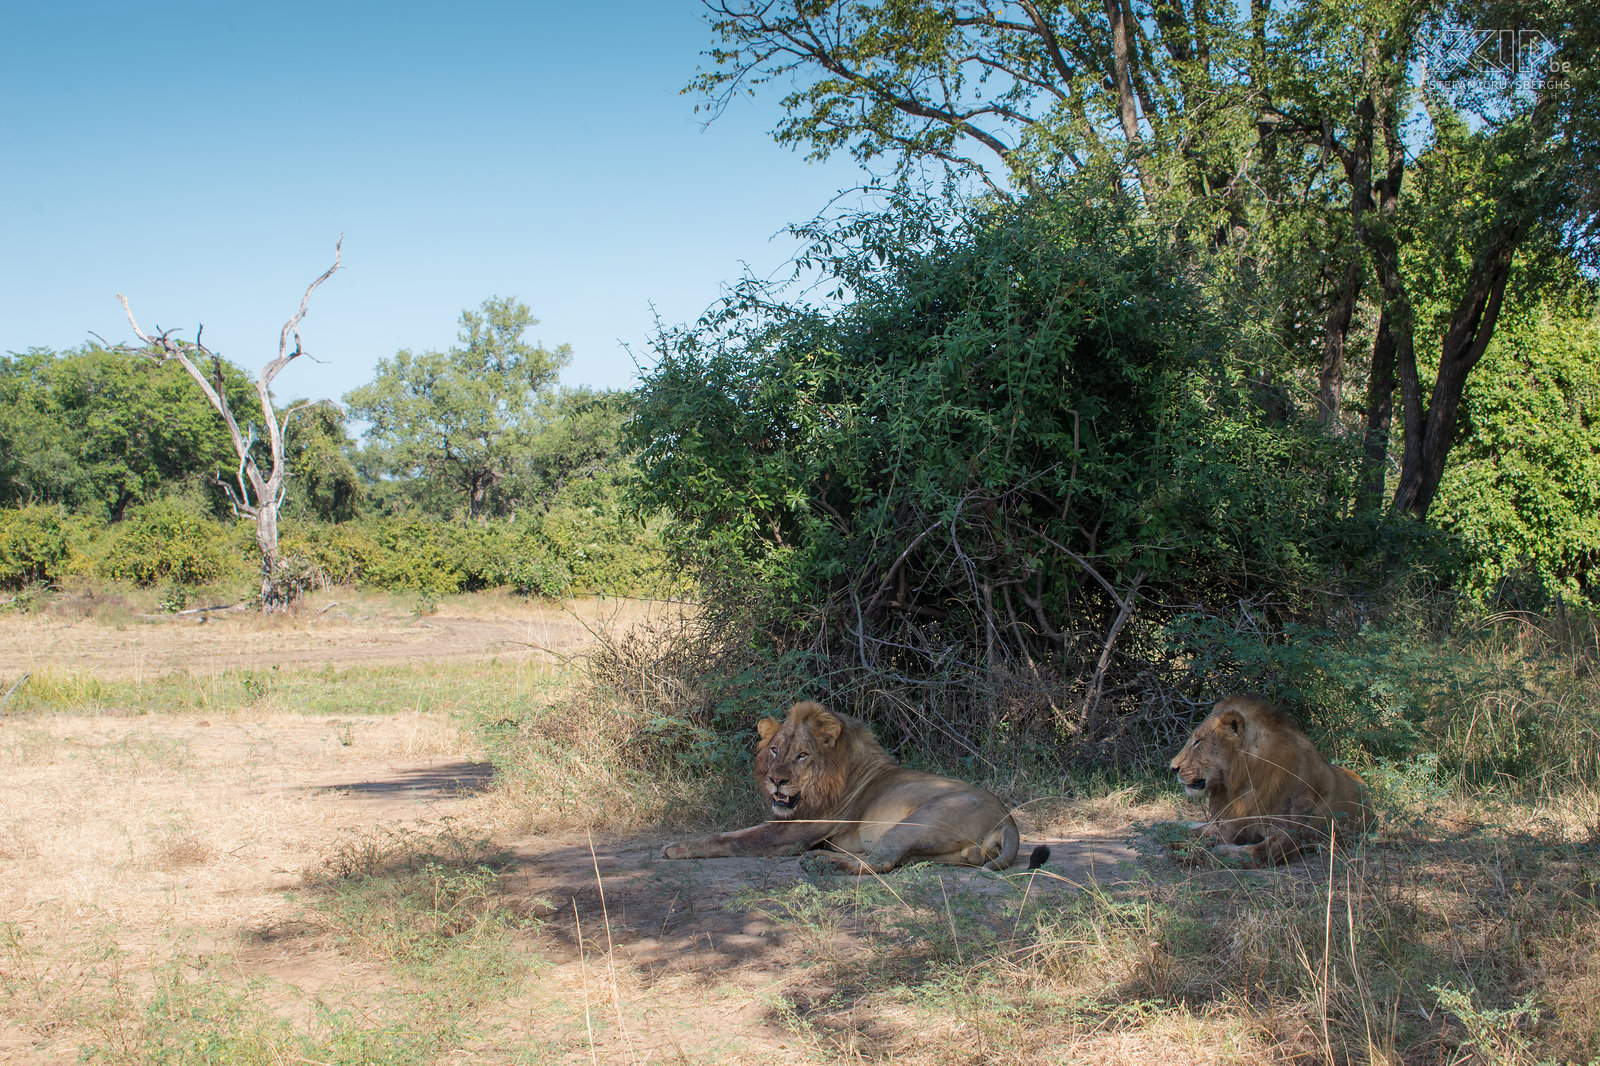 South Luangwa - Leeuwen South Luangwa nationaal park is Zambia's beroemdste park. Het grootste deel van het wildlife leeft gecentreerd rond de Luangwa rivier. Er zijn ook veel roofdieren, vooral luipaarden en hyena's. Ook enkele groepen leeuwen hebben er hun leefgebied. Dit zijn 2 leeuwen van een groep van 4 mannetjes. Stefan Cruysberghs